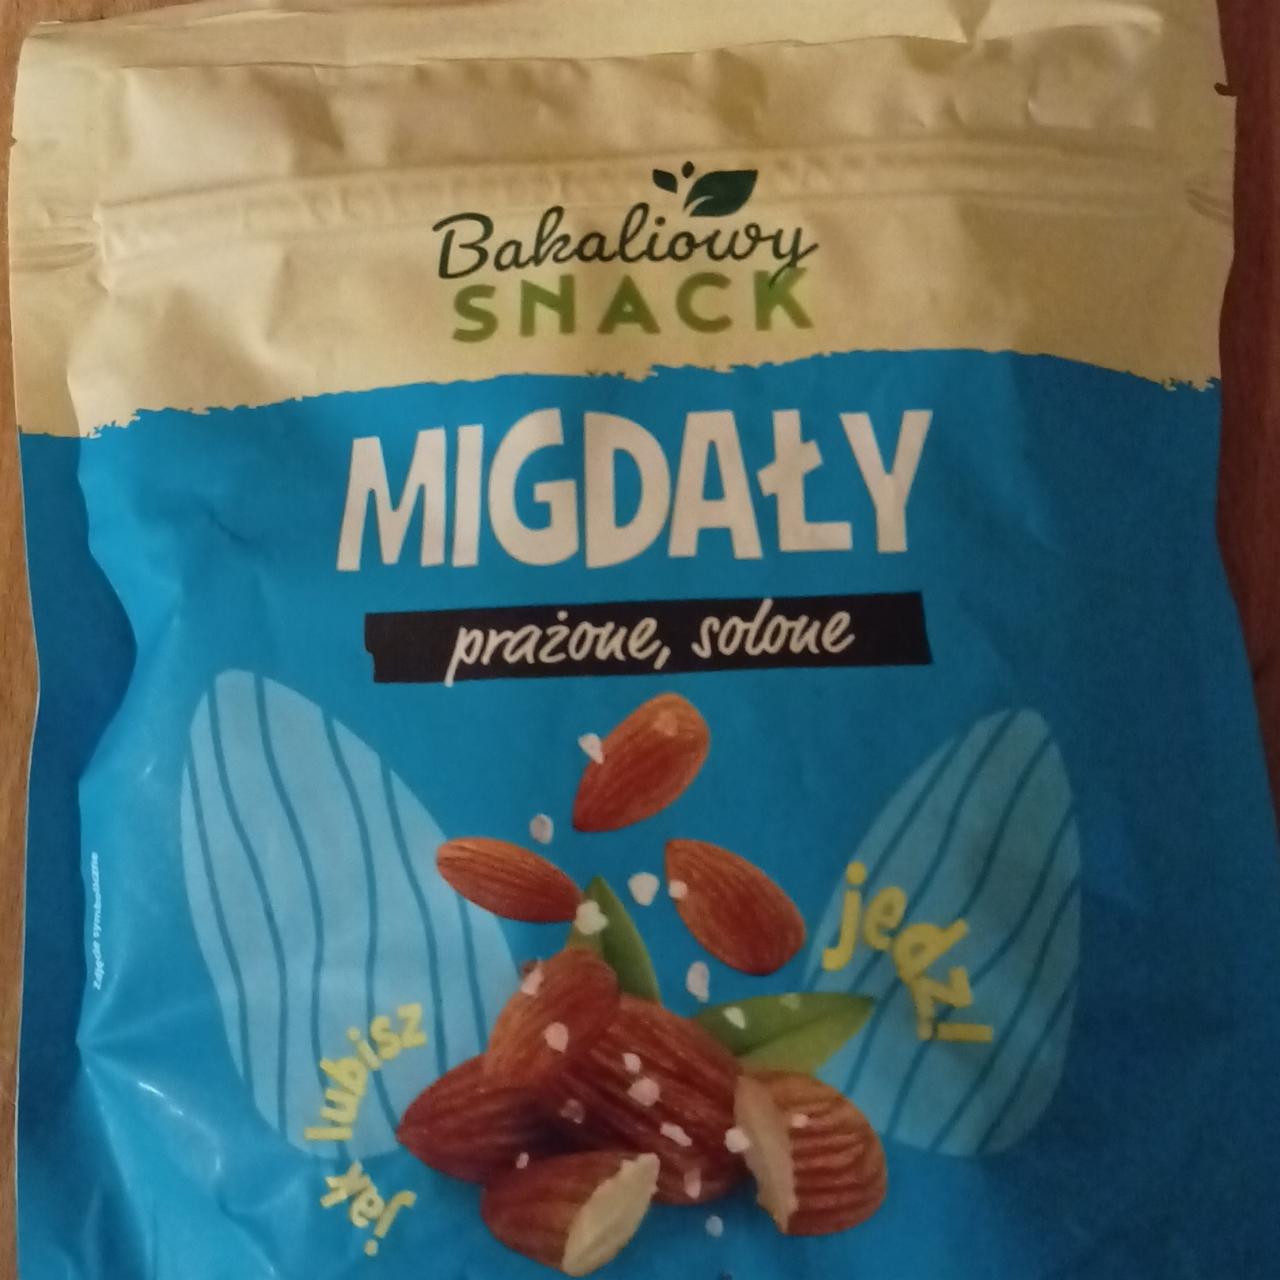 Zdjęcia - Migdały prażone solone Bakaliowy snack